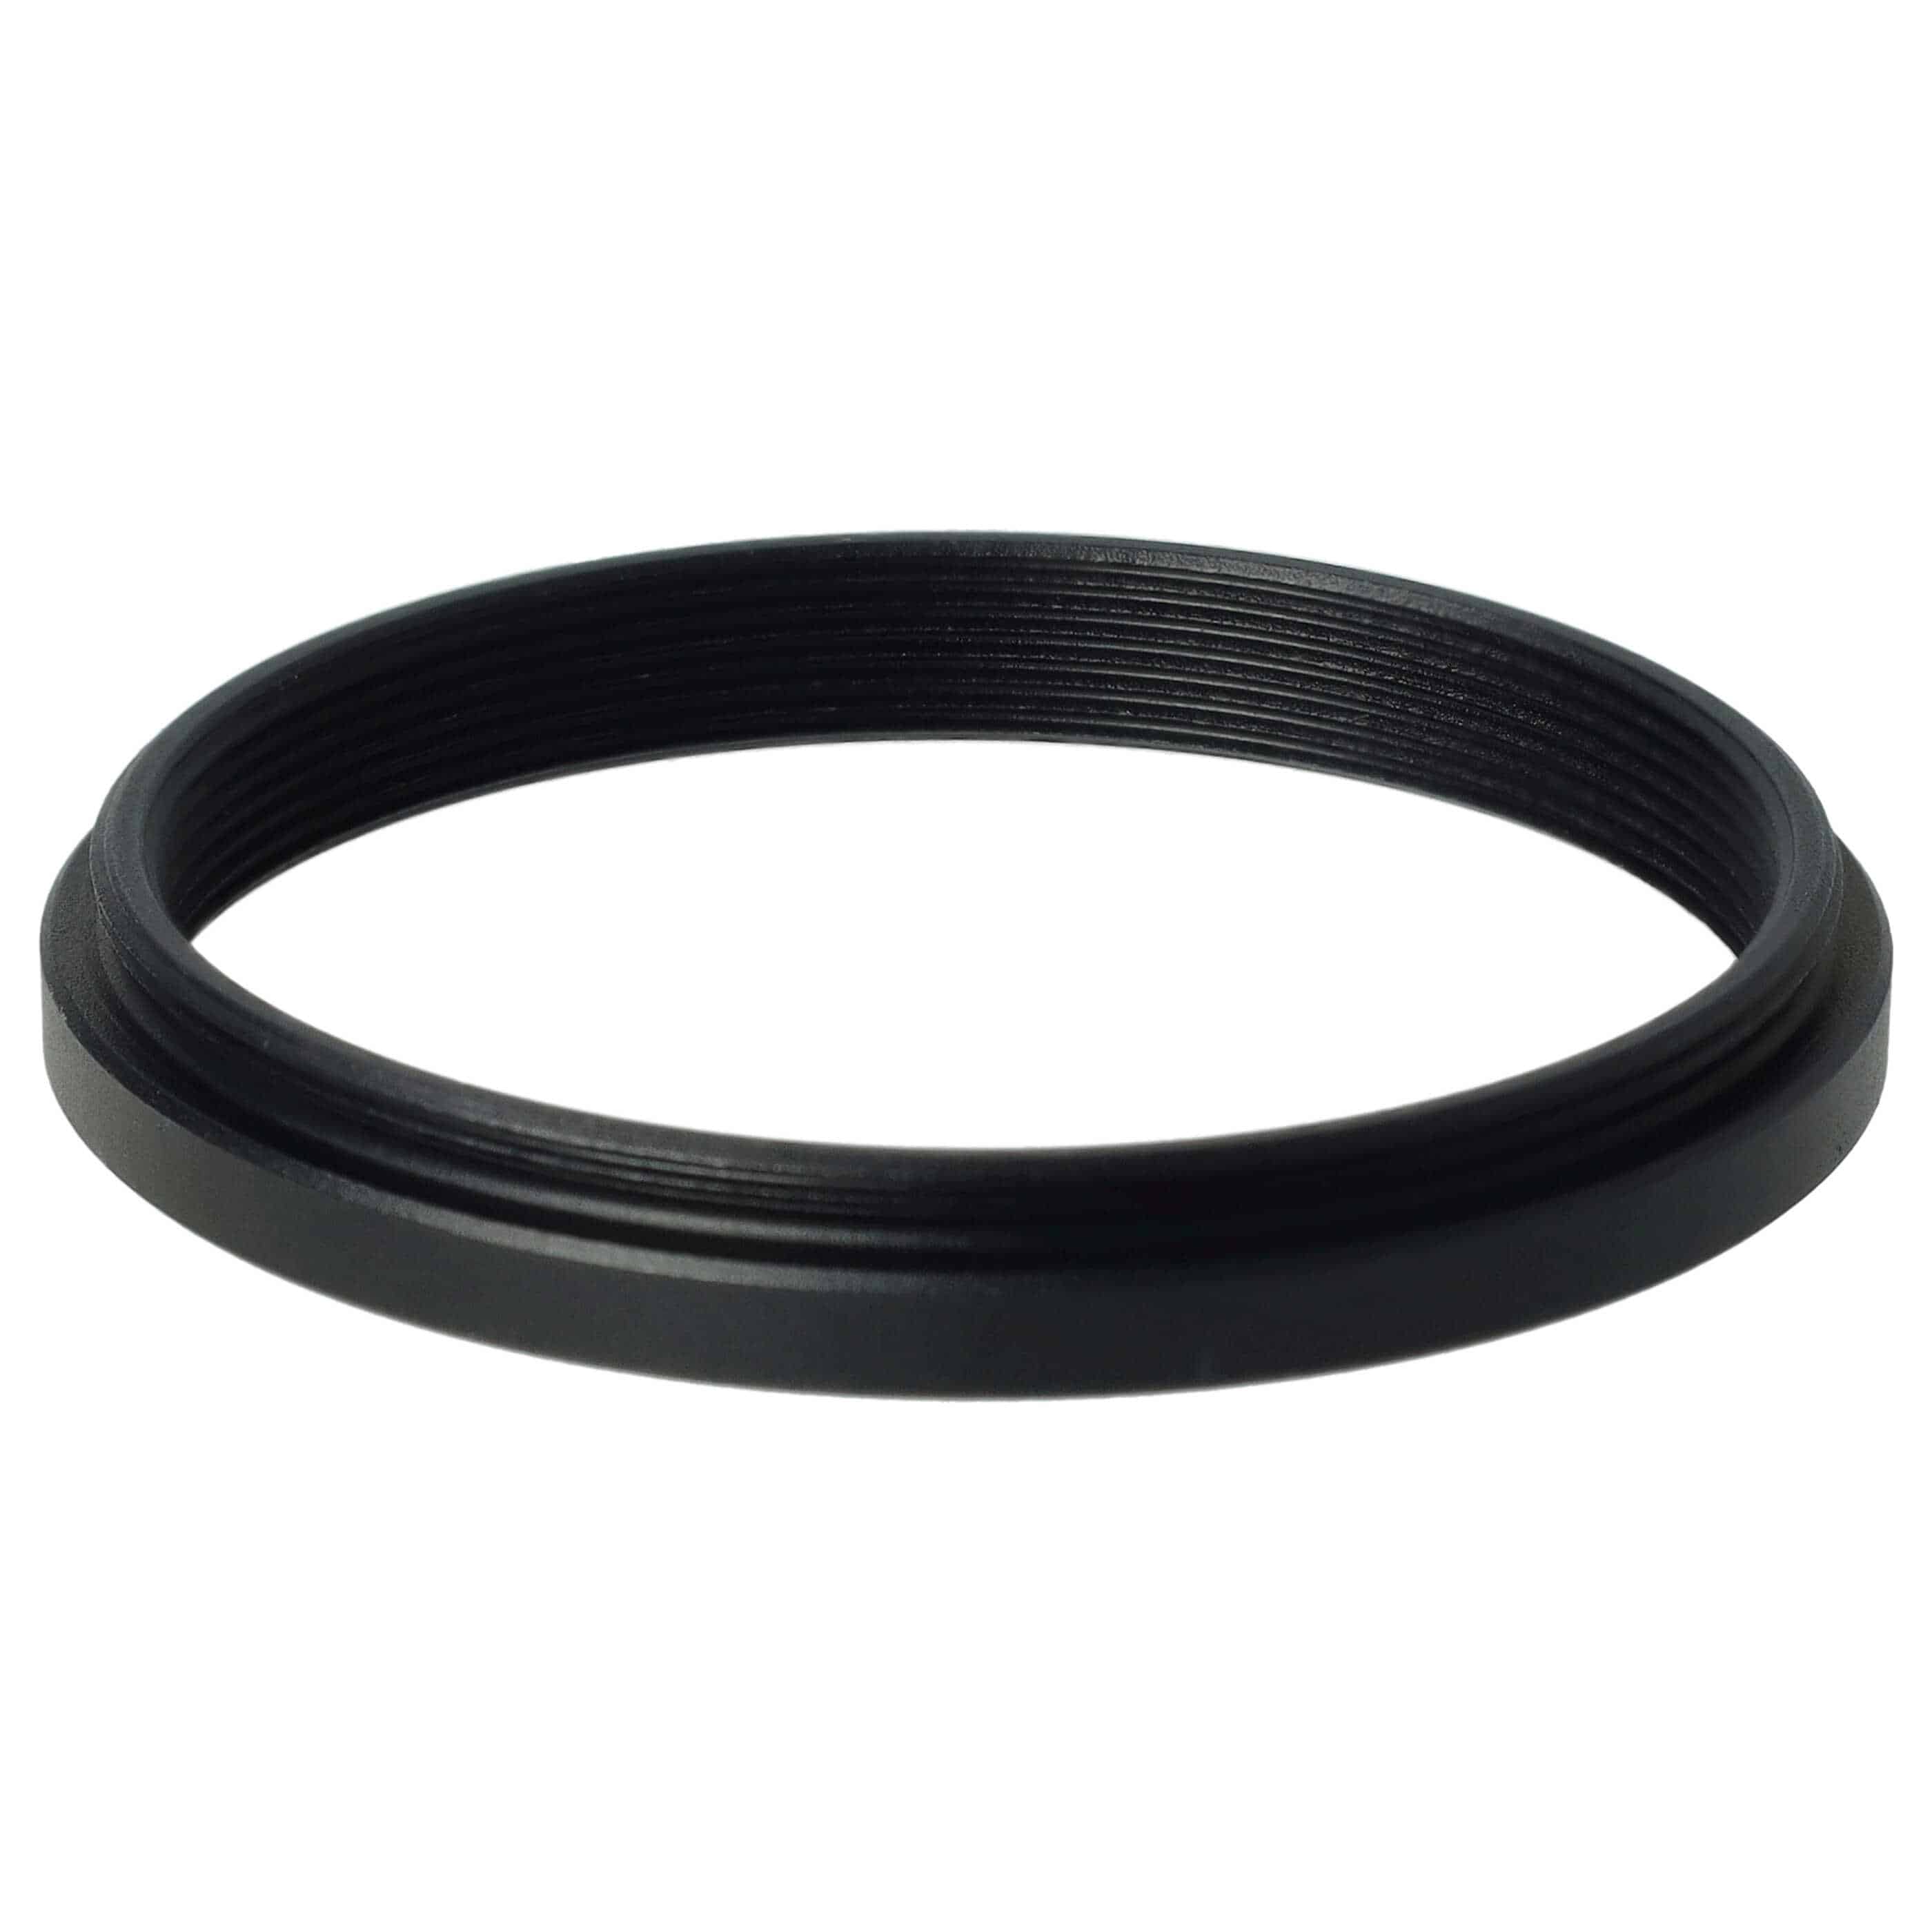 Anello adattatore step-down da 46 mm a 43 mm per obiettivo fotocamera - Adattatore filtro, metallo, nero